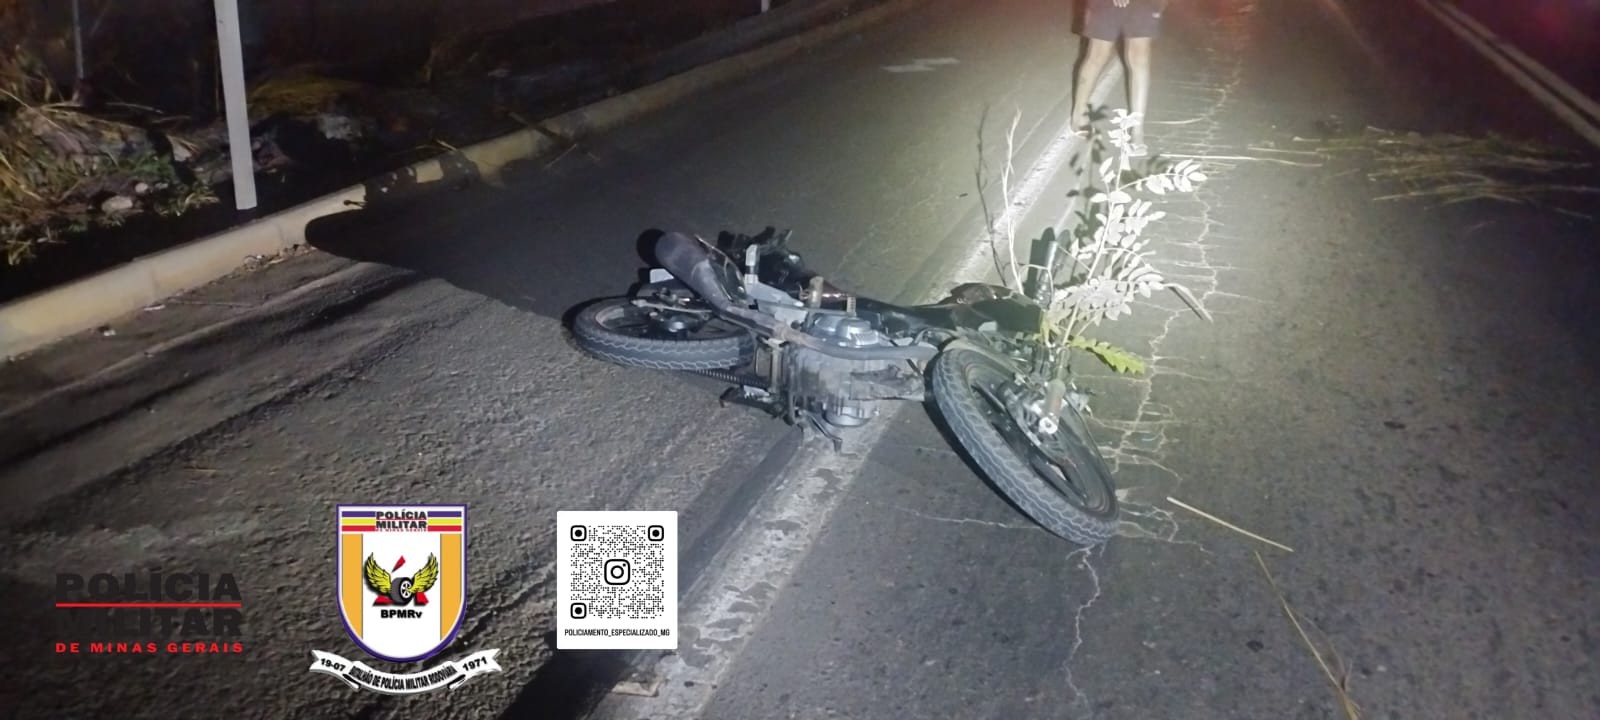 Motociclista fica gravemente ferido após atropelar vaca na AMG-0910, em Curvelo